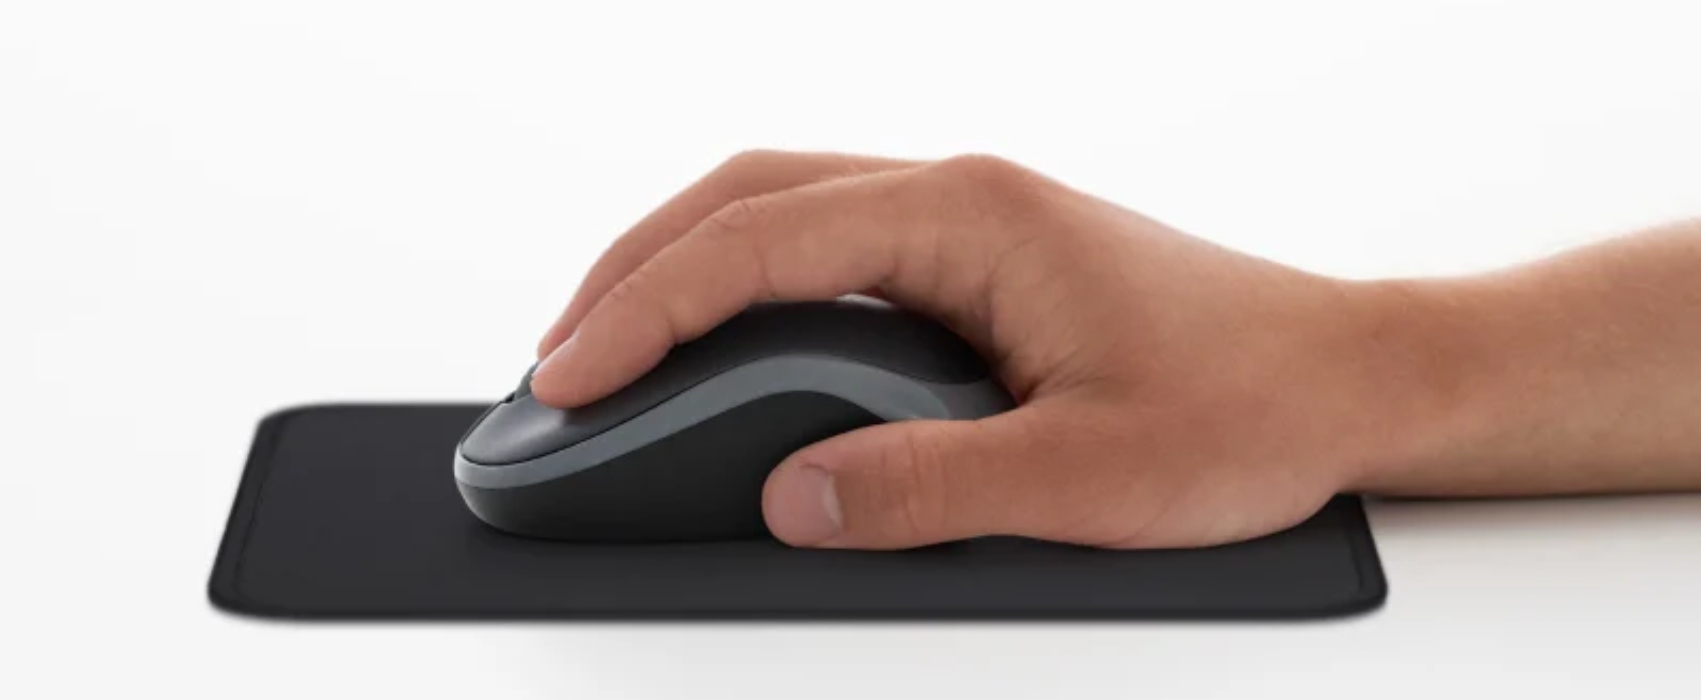 Hoàn thành nhiều việc hơn bằng cách bổ sung thêm M185 vào máy tính xách tay. Theo một nghiên cứu gần đây, người dùng máy tính xách tay chọn con chuột này thay cho bàn di chuột có hiệu suất cao hơn 50% và làm việc nhanh hơn 30%.